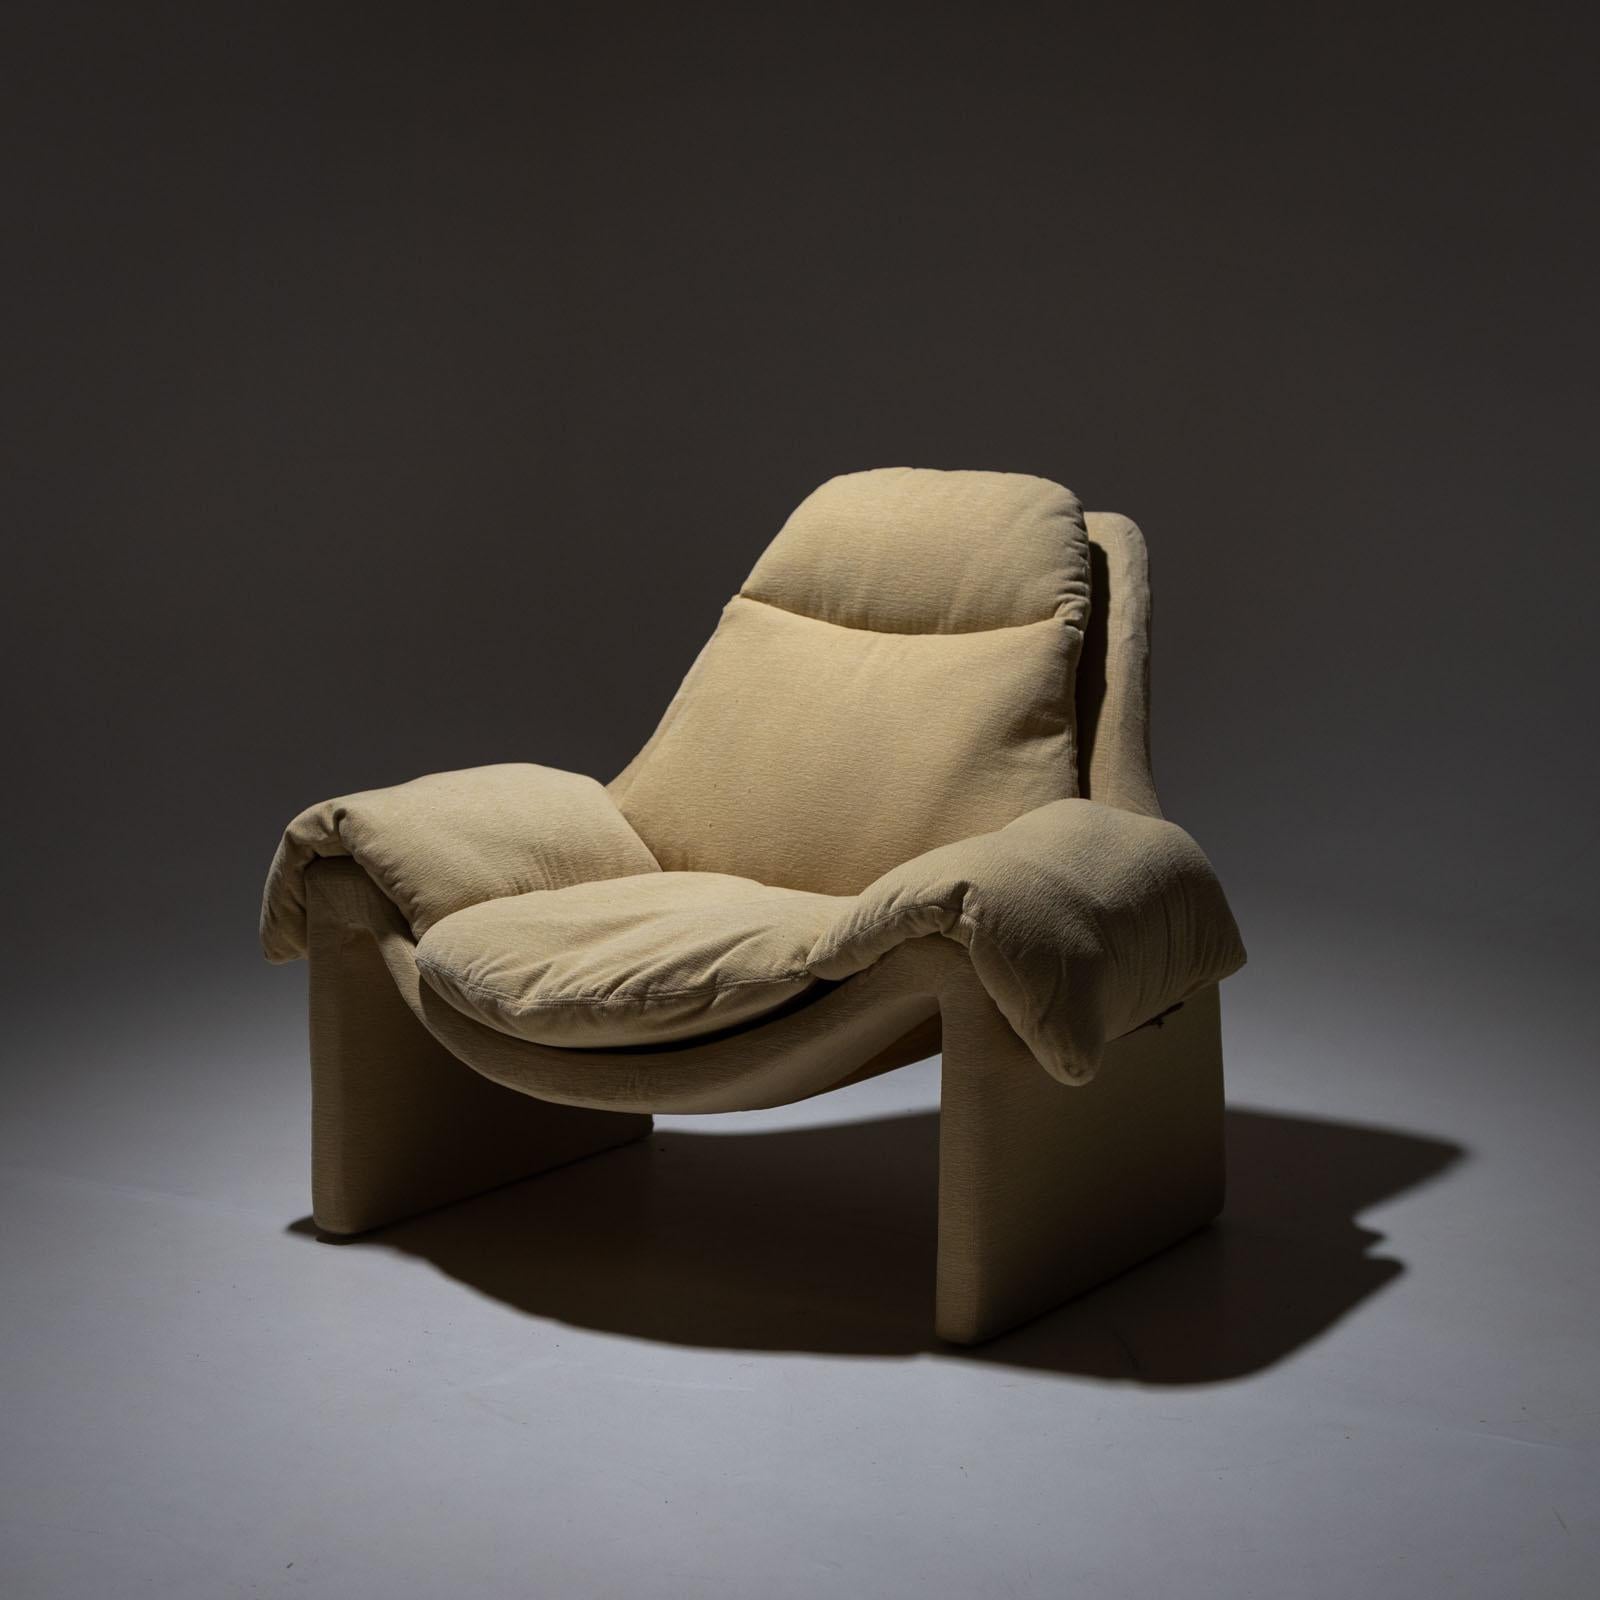 P60 Loungesessel mit beigem Bezug. Der Sessel wurde erstmals in den 1960er Jahren von Vittorio Introini für Saporiti entworfen. Der Einband ist in gutem Zustand.